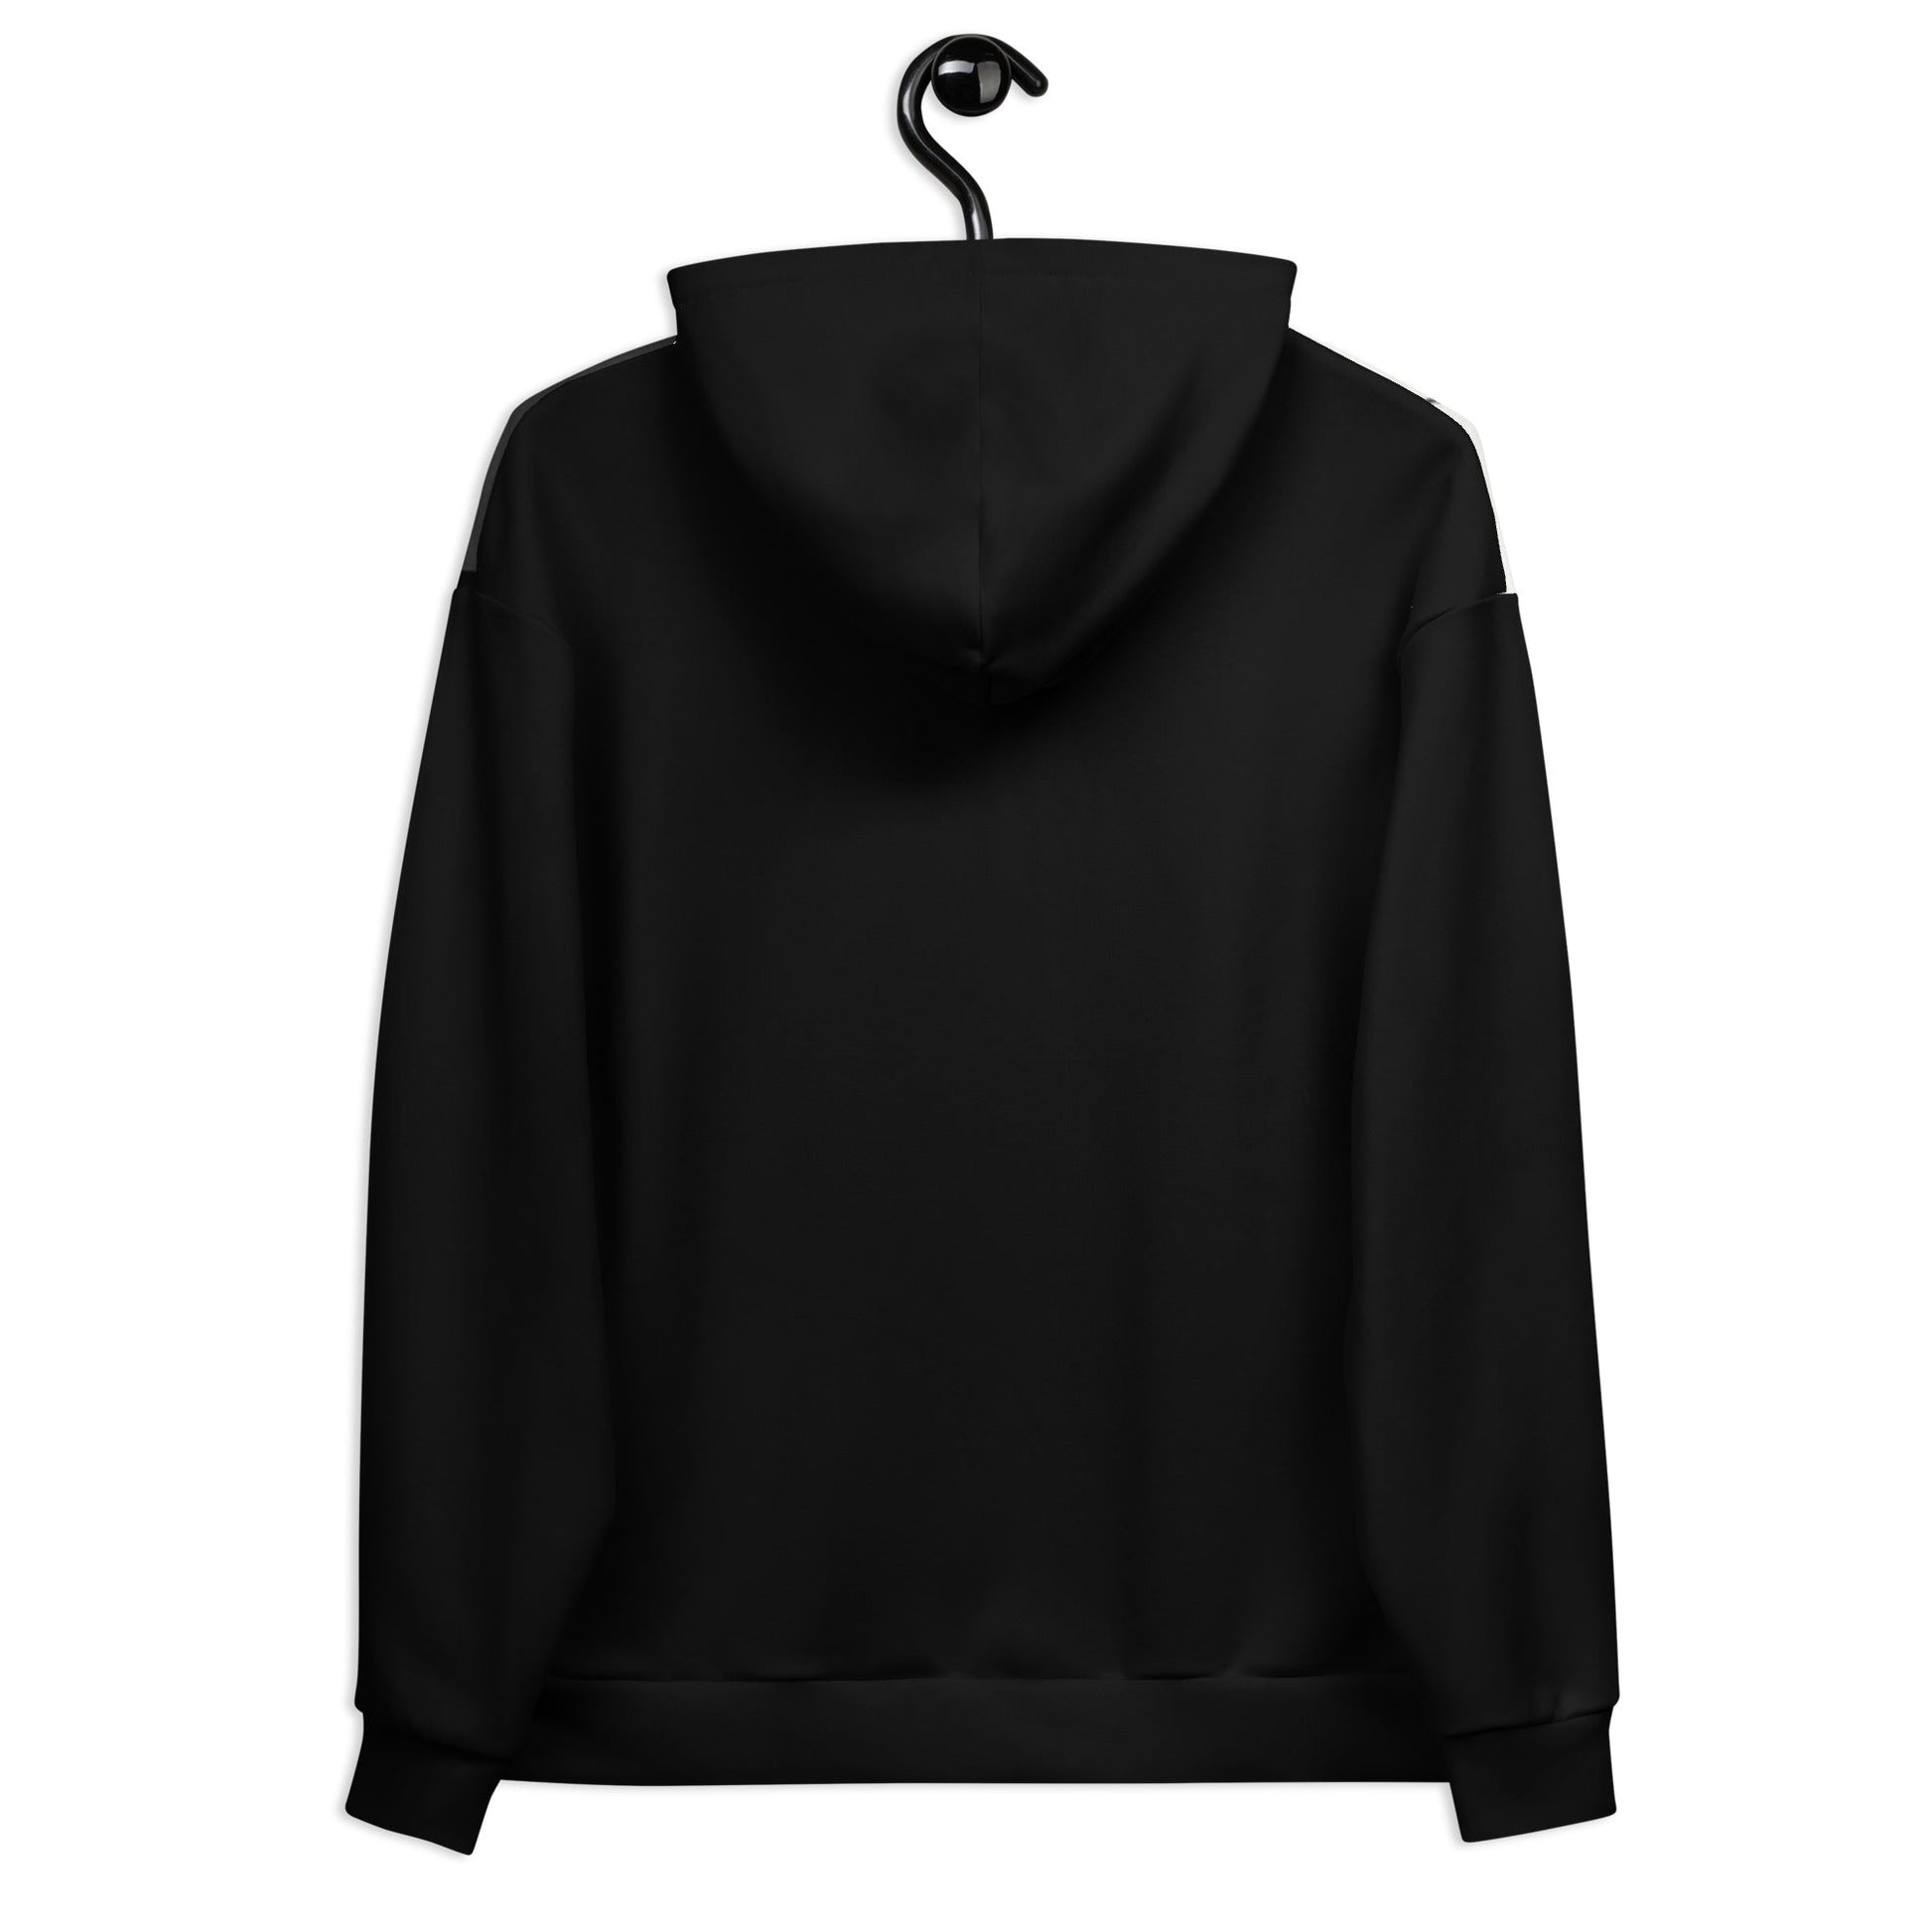 premium-womens-hoodie-chemosh-black